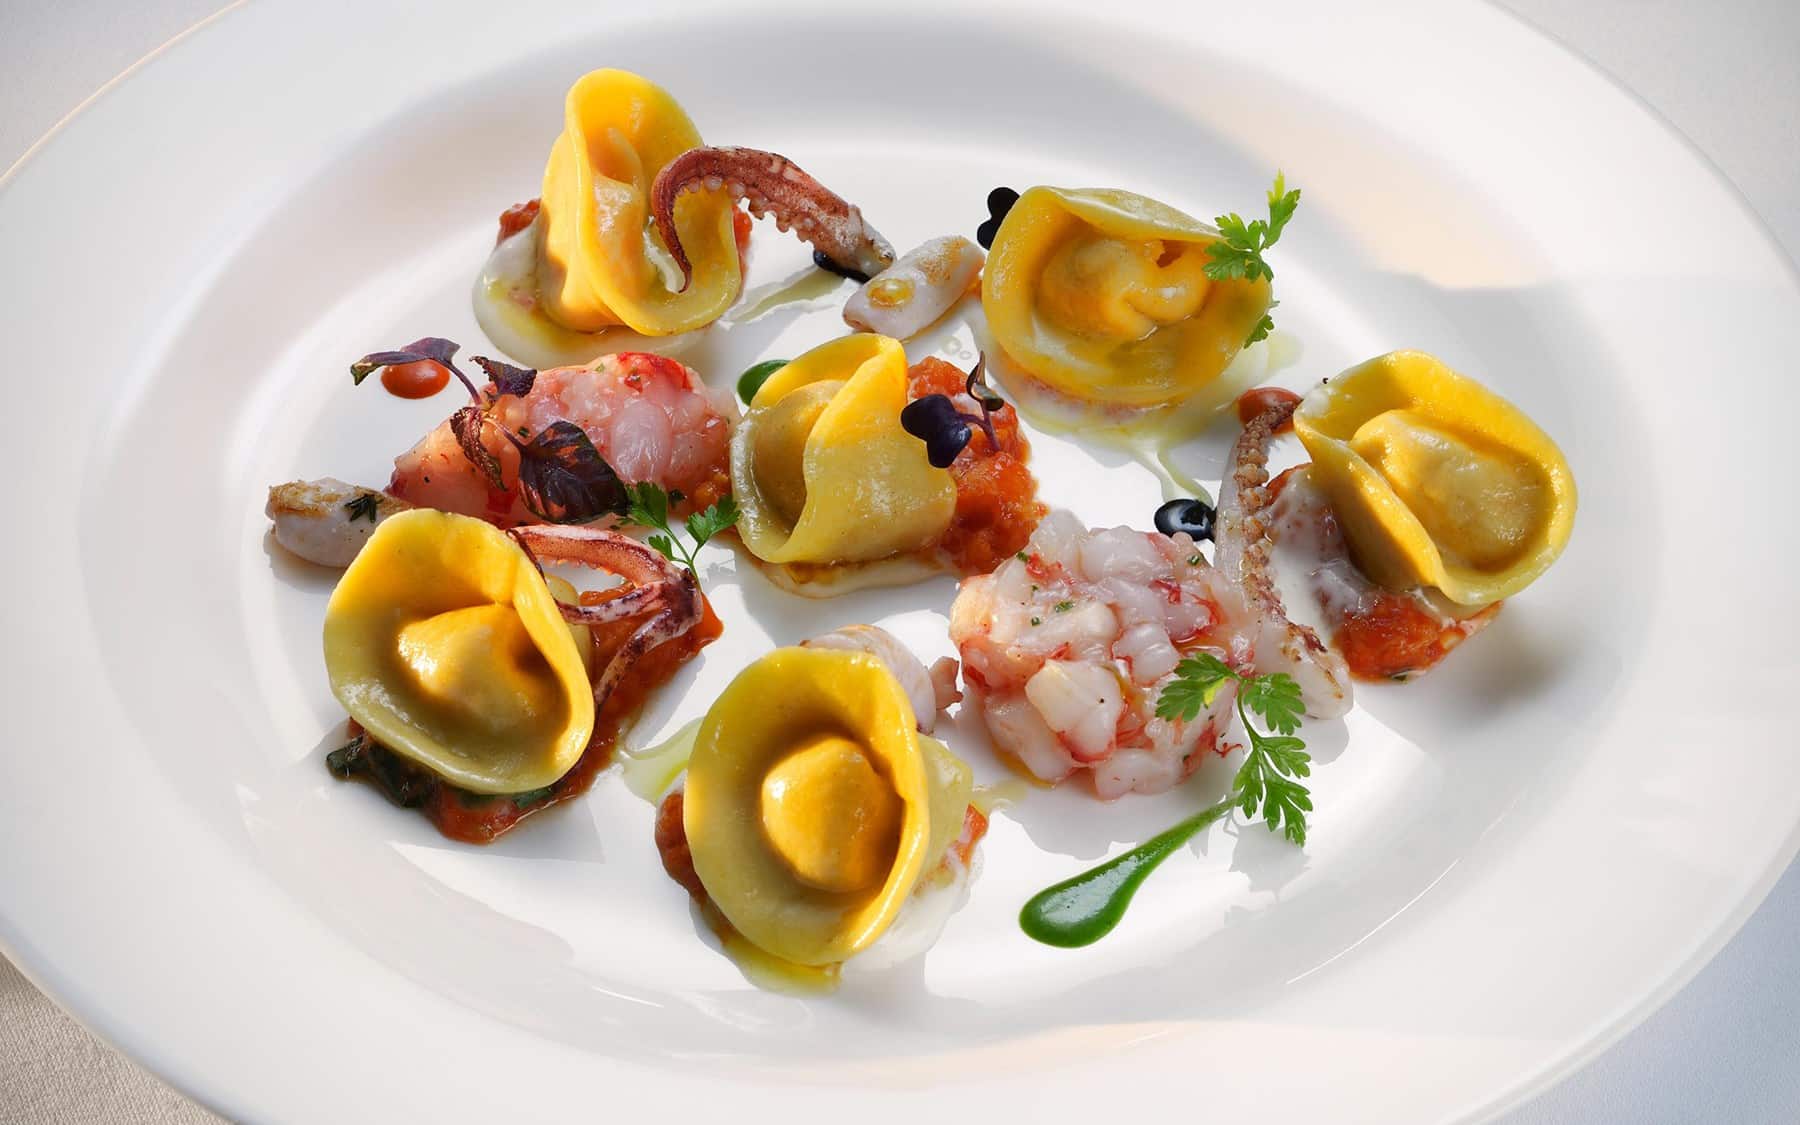 capri-mediterranean-restaurant-zermatt_mcp-capri-food-051-05-new